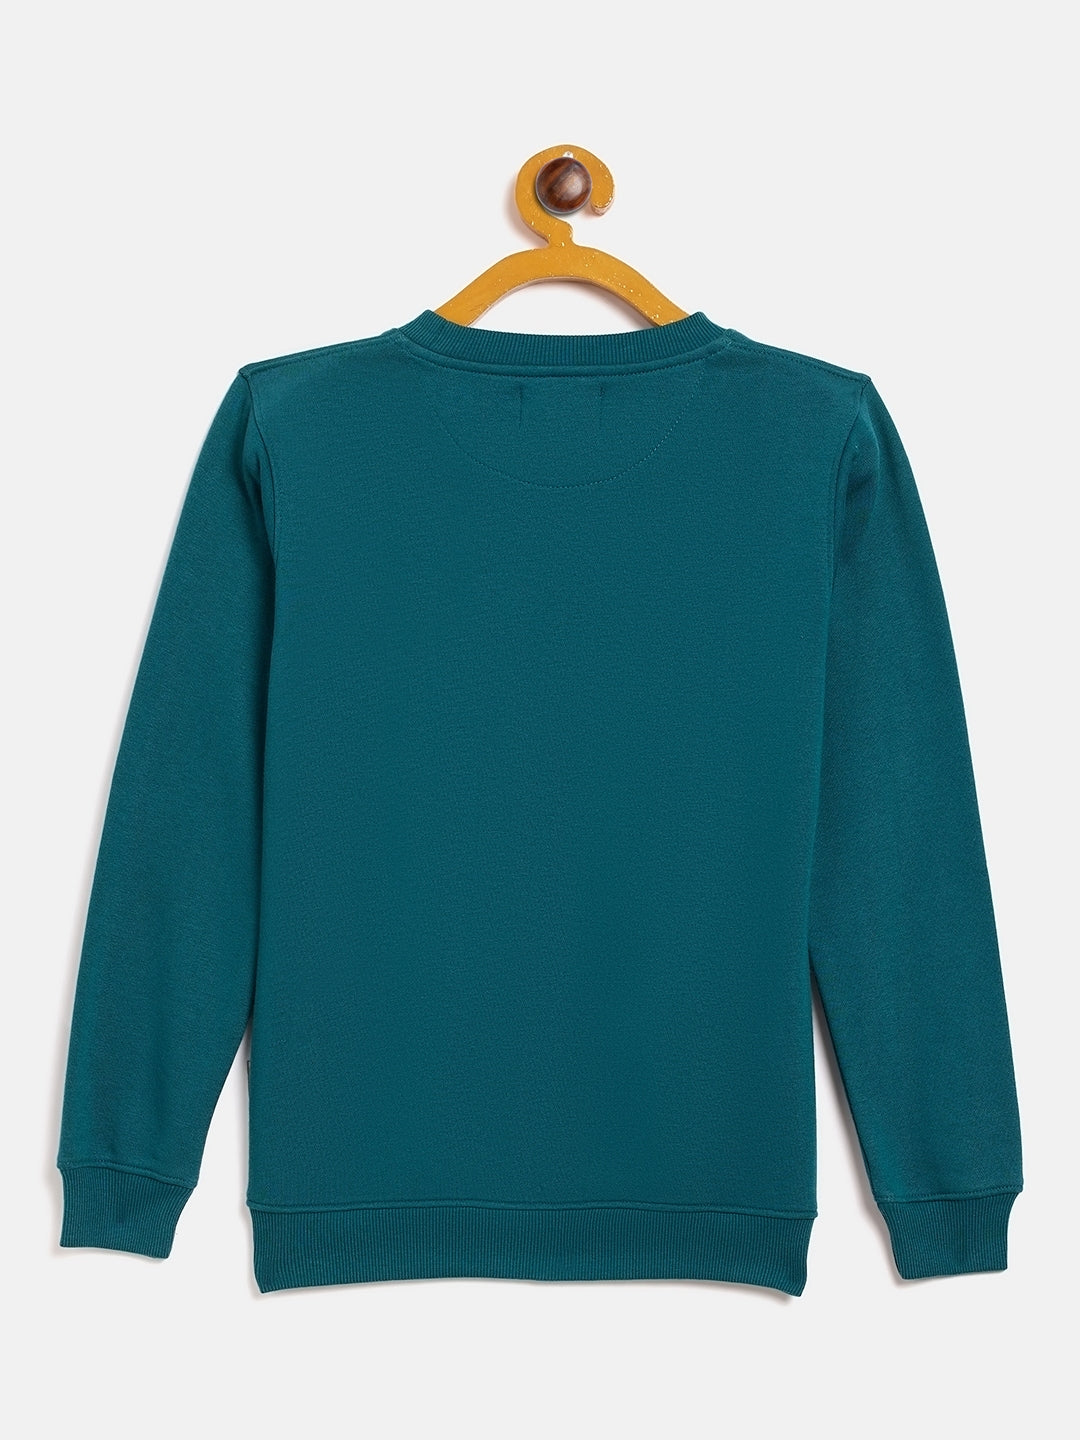 Blue Printed Round Neck Sweatshirt - Girls Sweatshirts